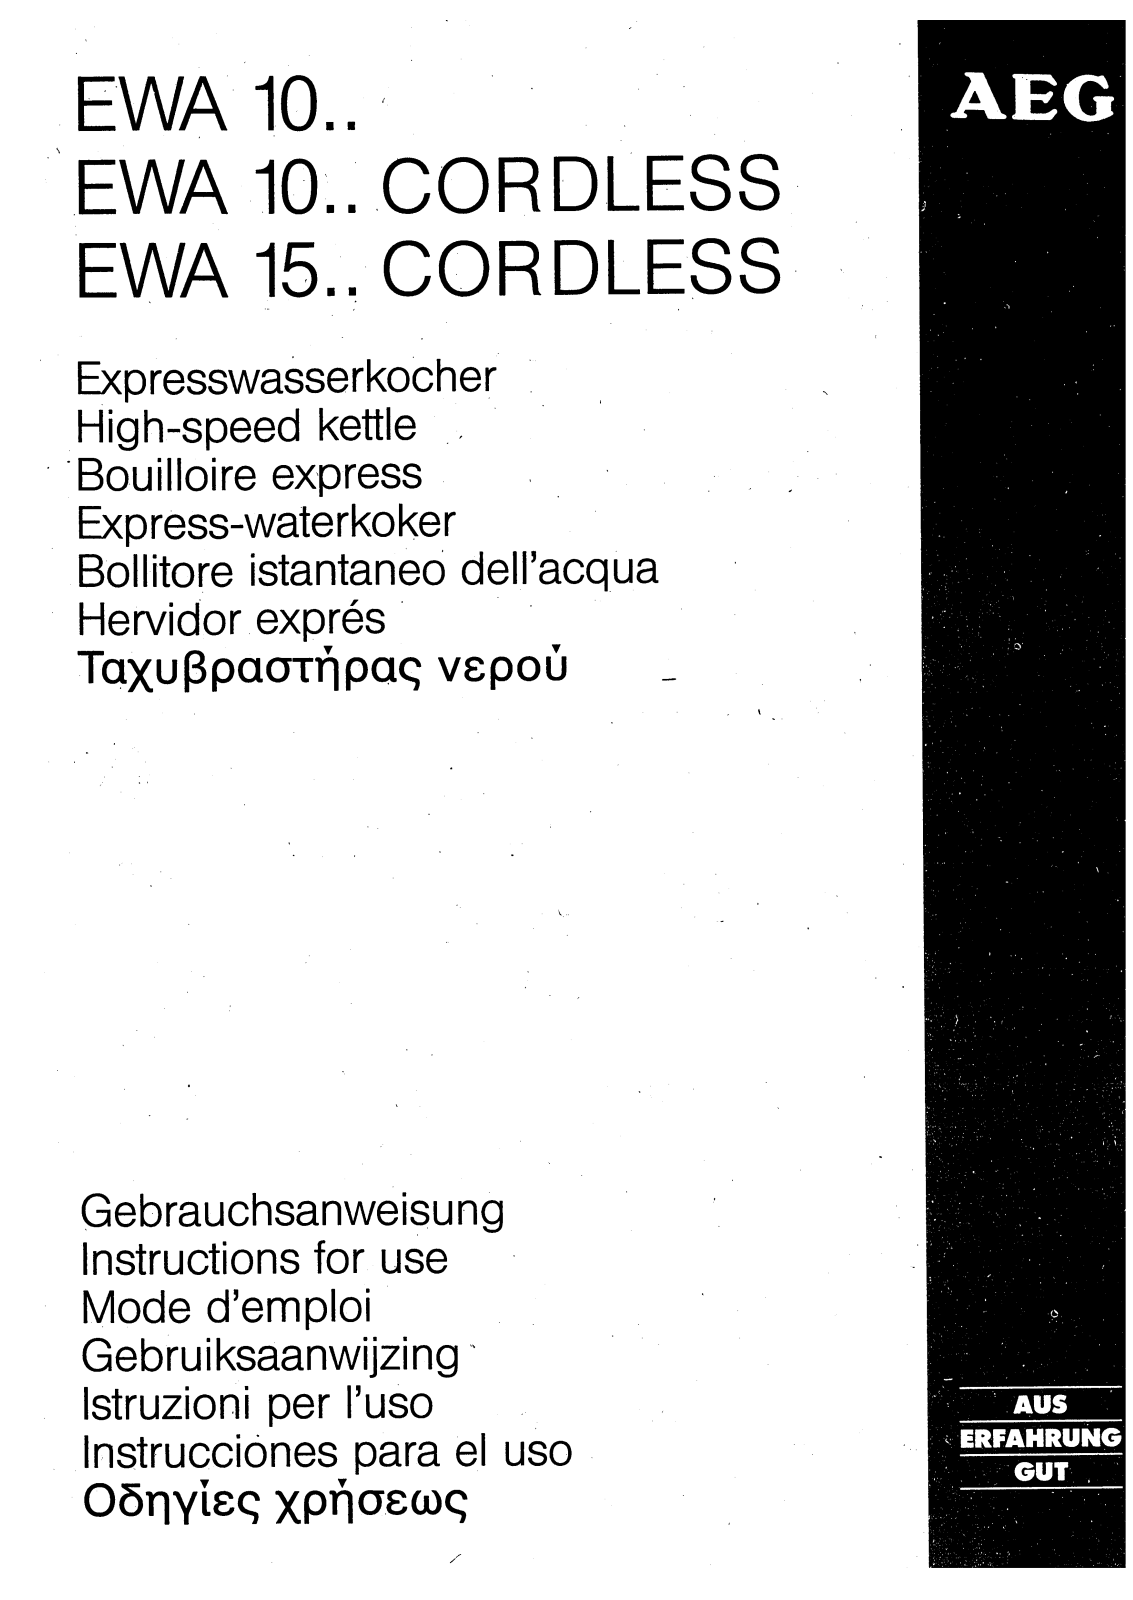 electrolux EWA1526, EWA1003, EWA1013, EWA1500, EWA1004 User Manual